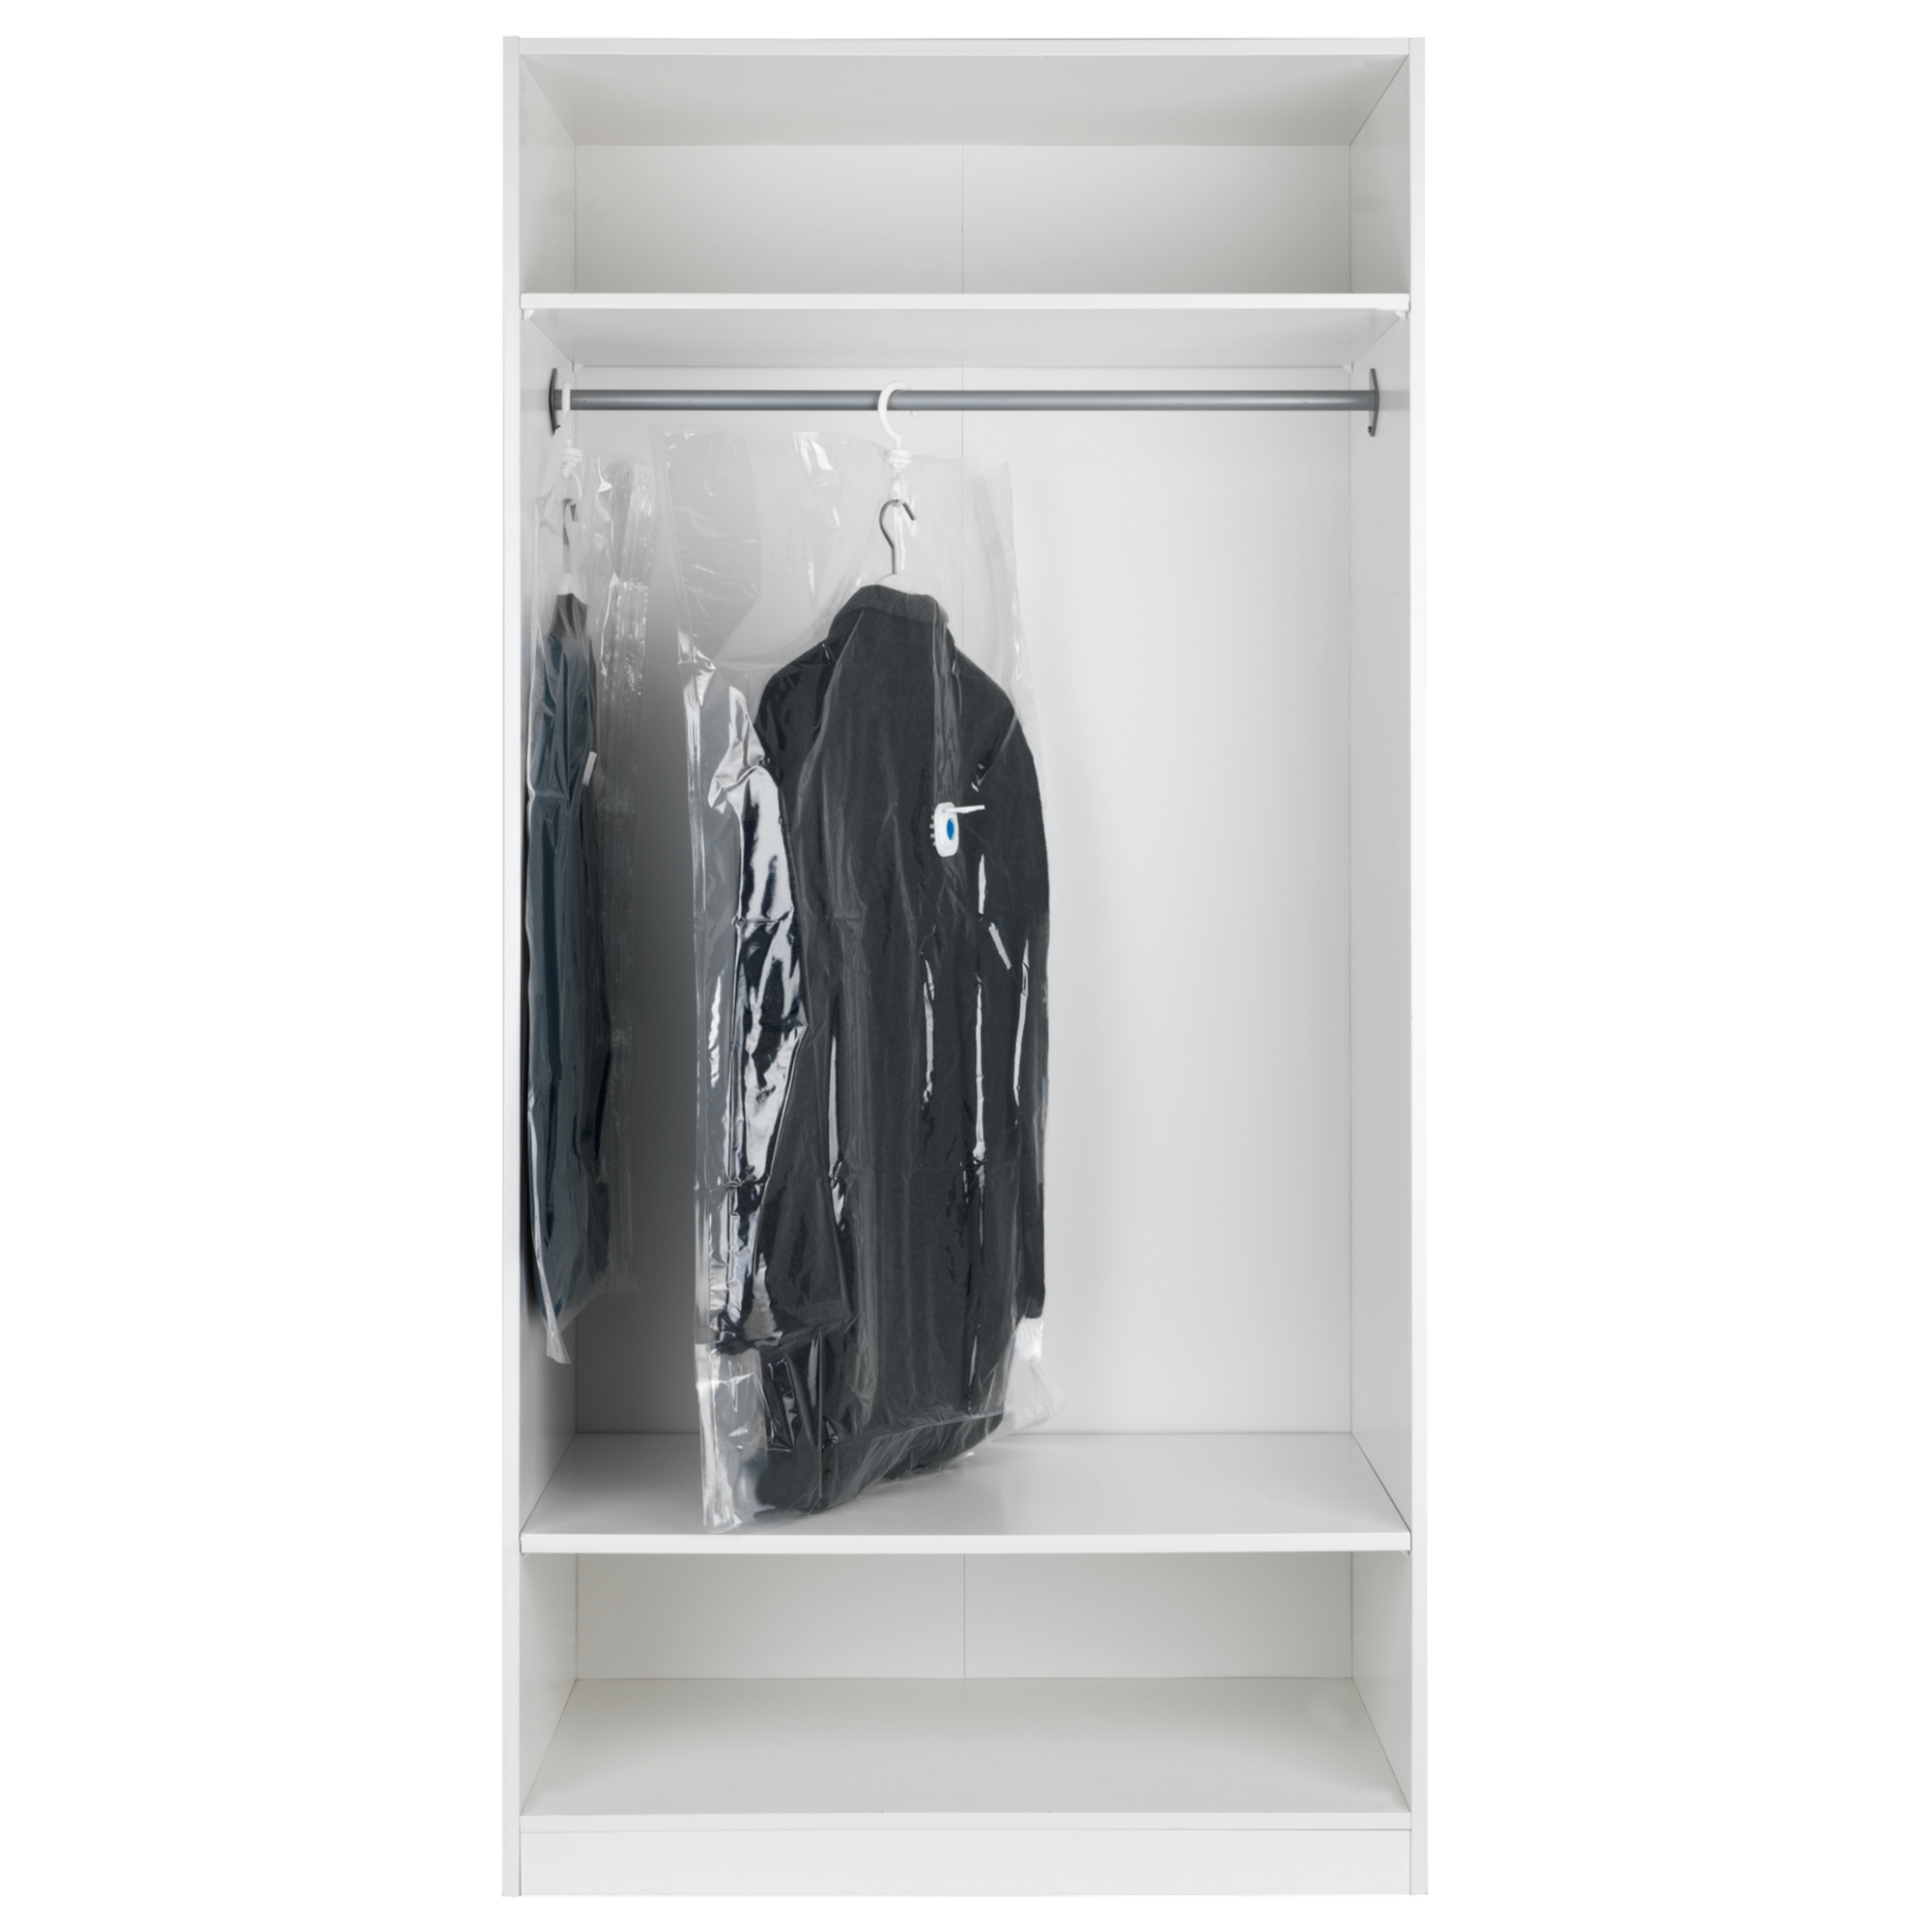 Kleidersack 'Vakuum XL' transparent, 145 x 70 cm + product picture